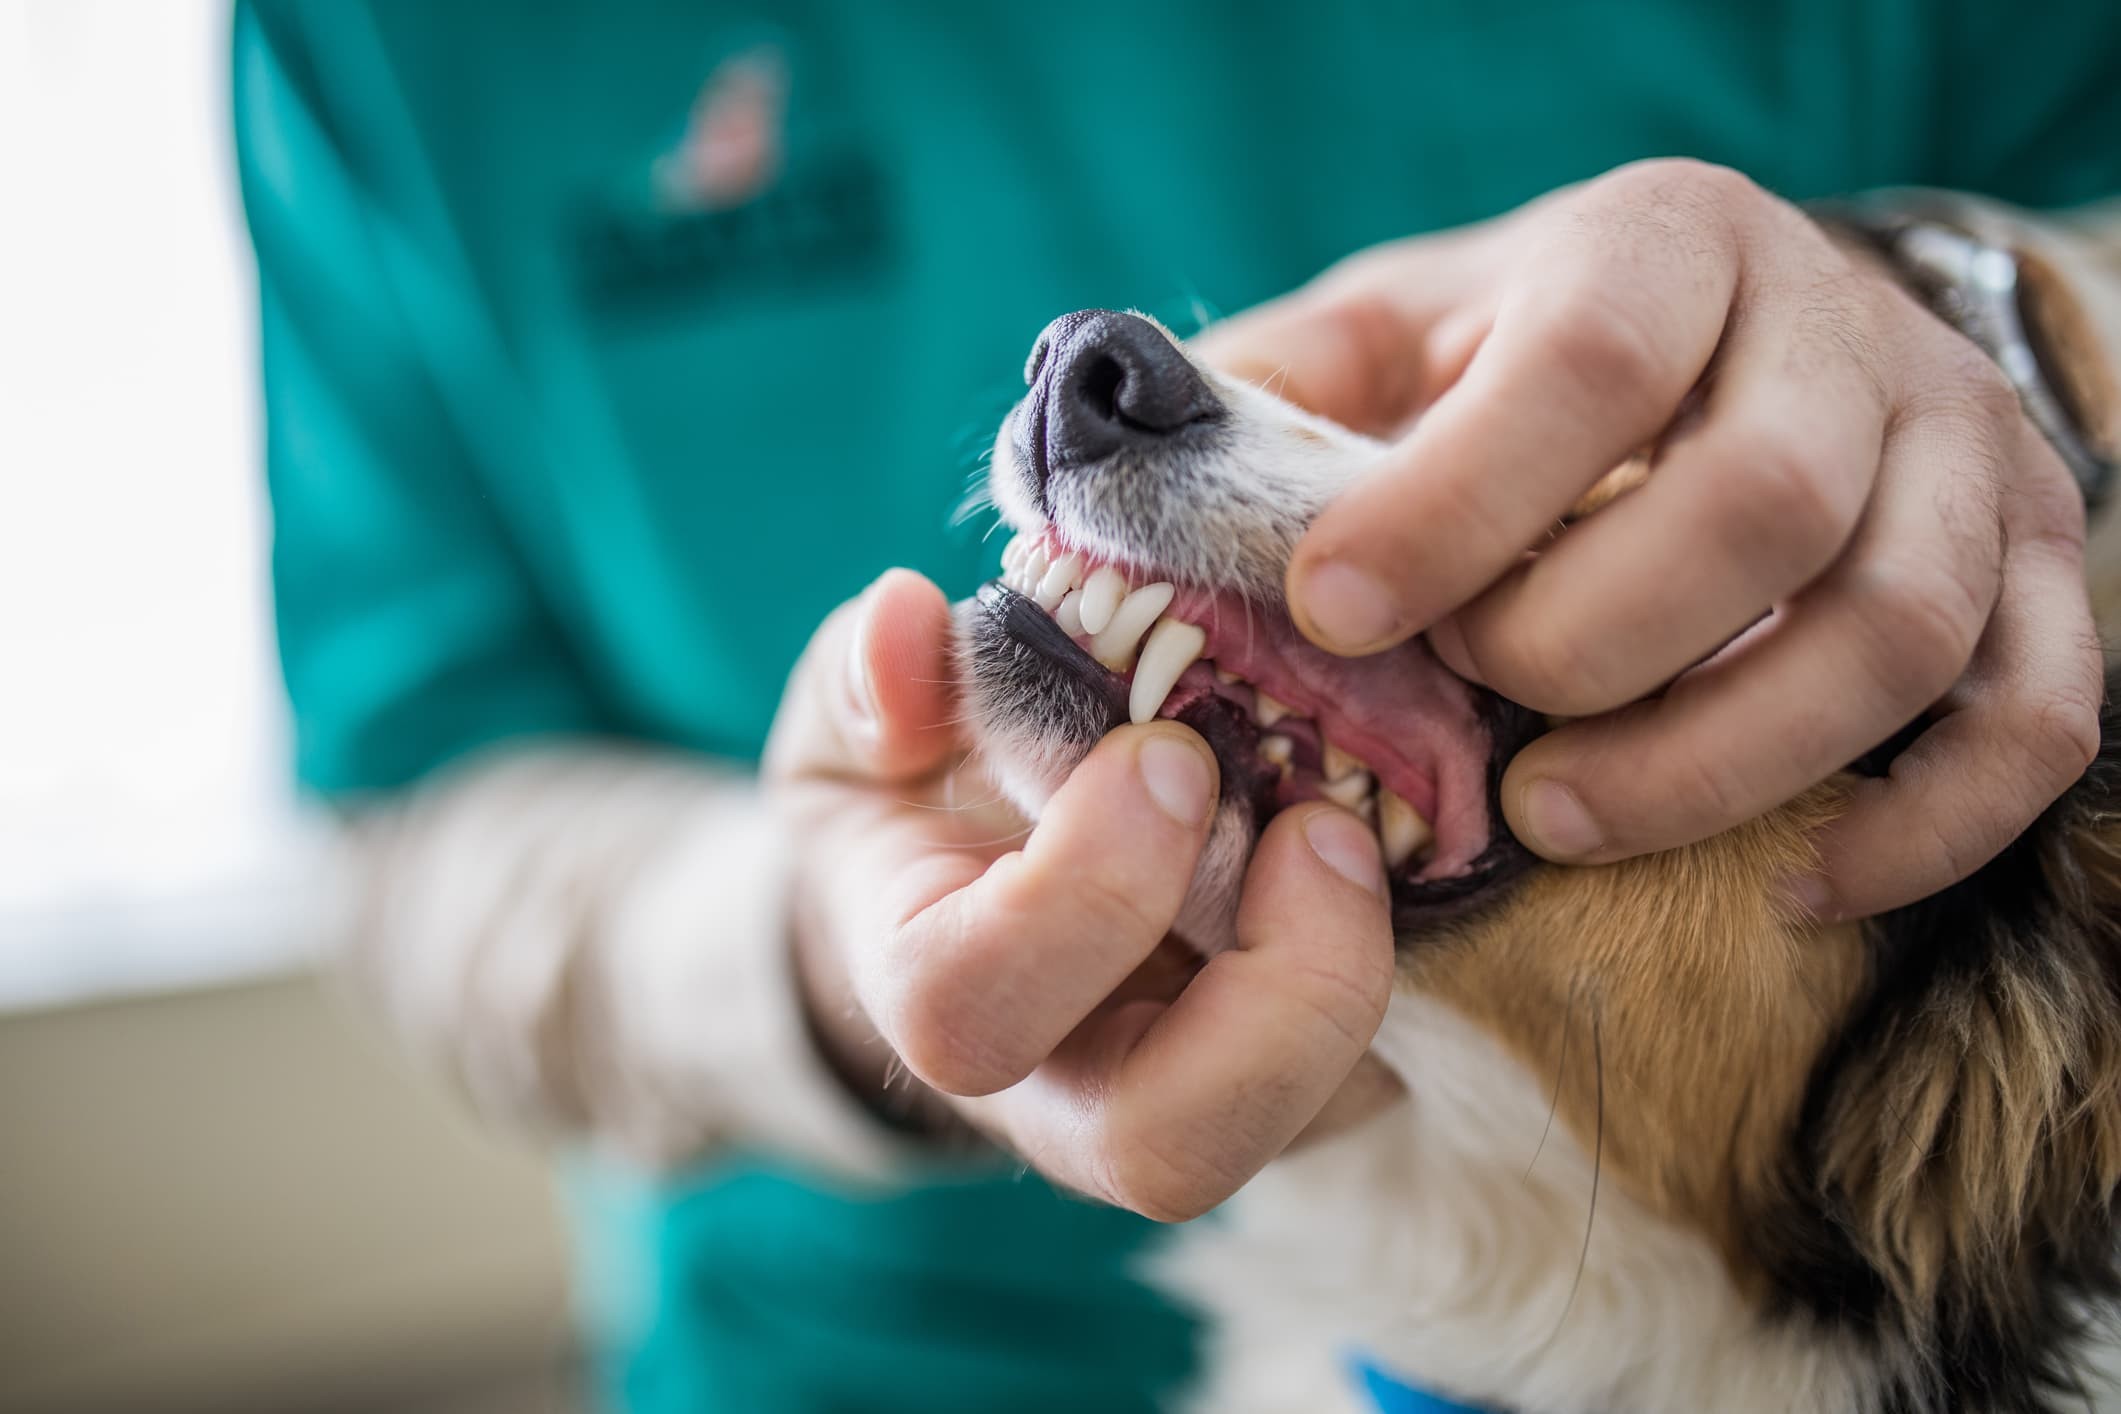 Um veterinário examinando os dentes de um cachorro de pelo caramelo e branco.